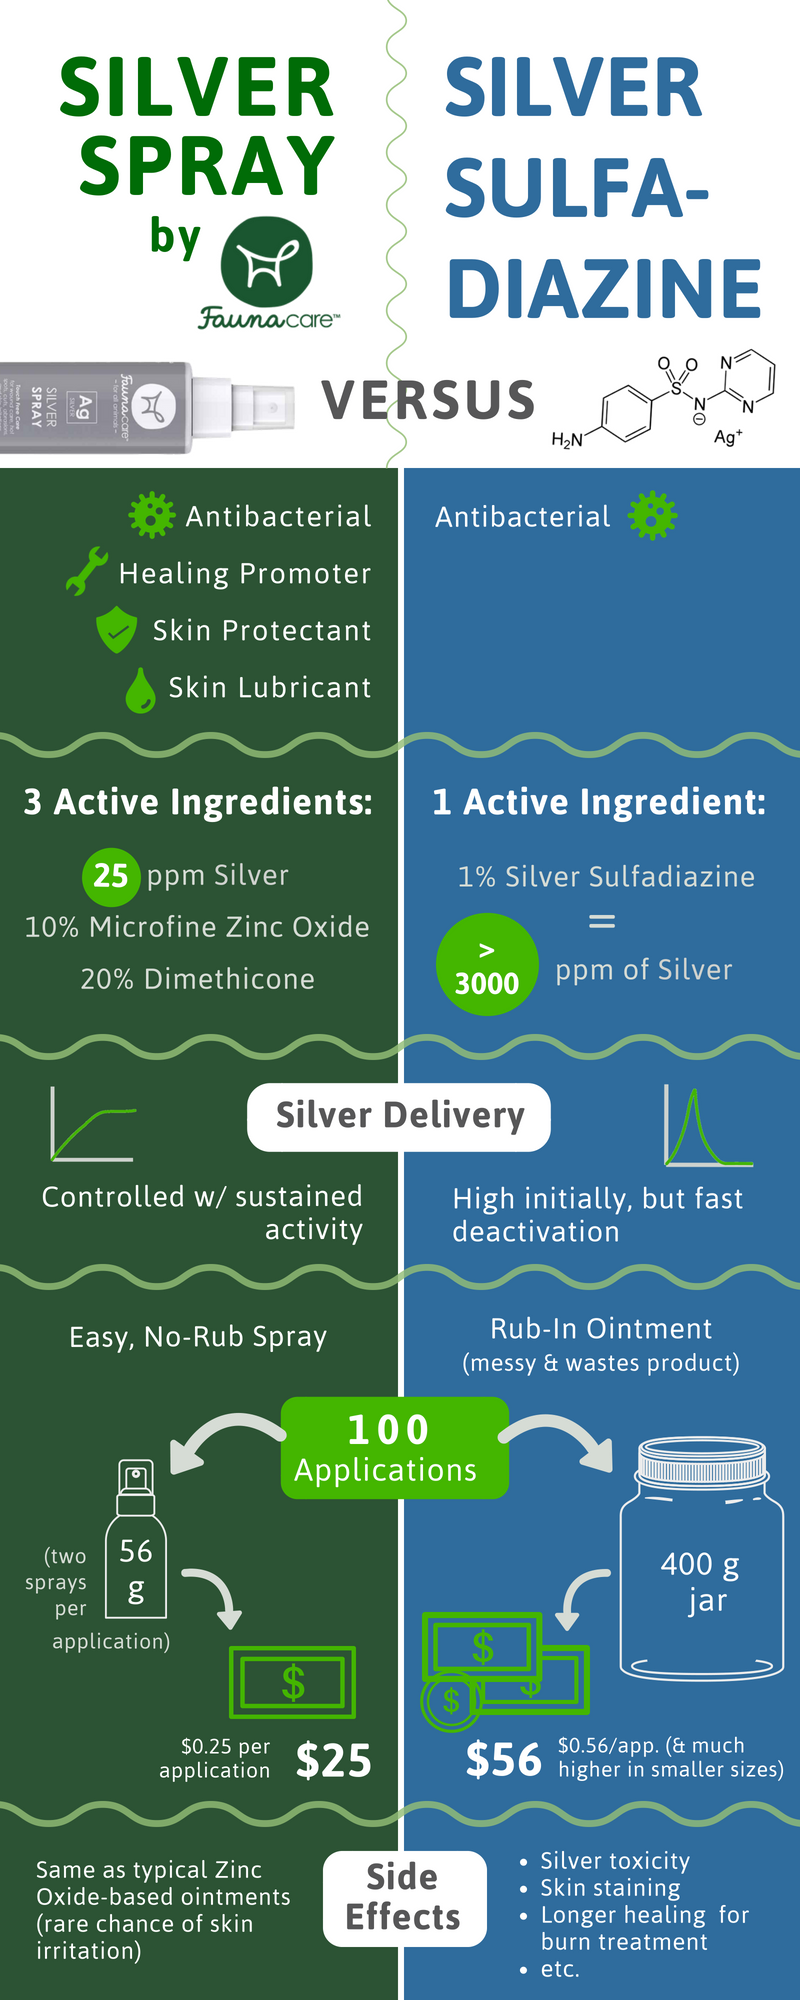 Почему следует использовать серебряный спрей вместо сульфадиазина серебра